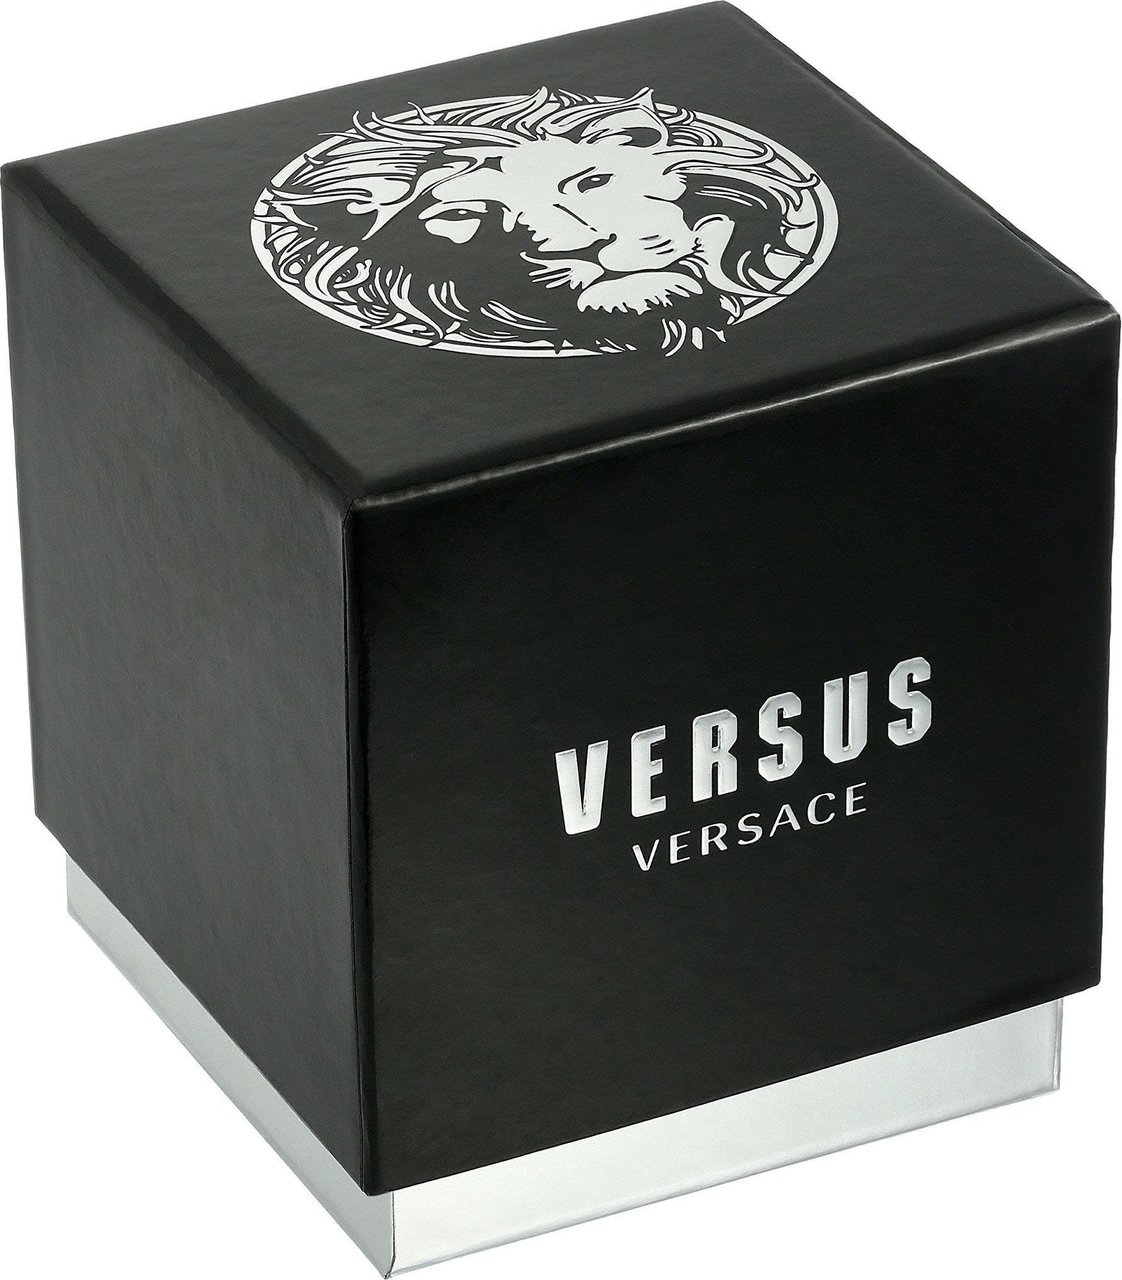 Versace VSPCA4221 Camden Market dames horloge Groen